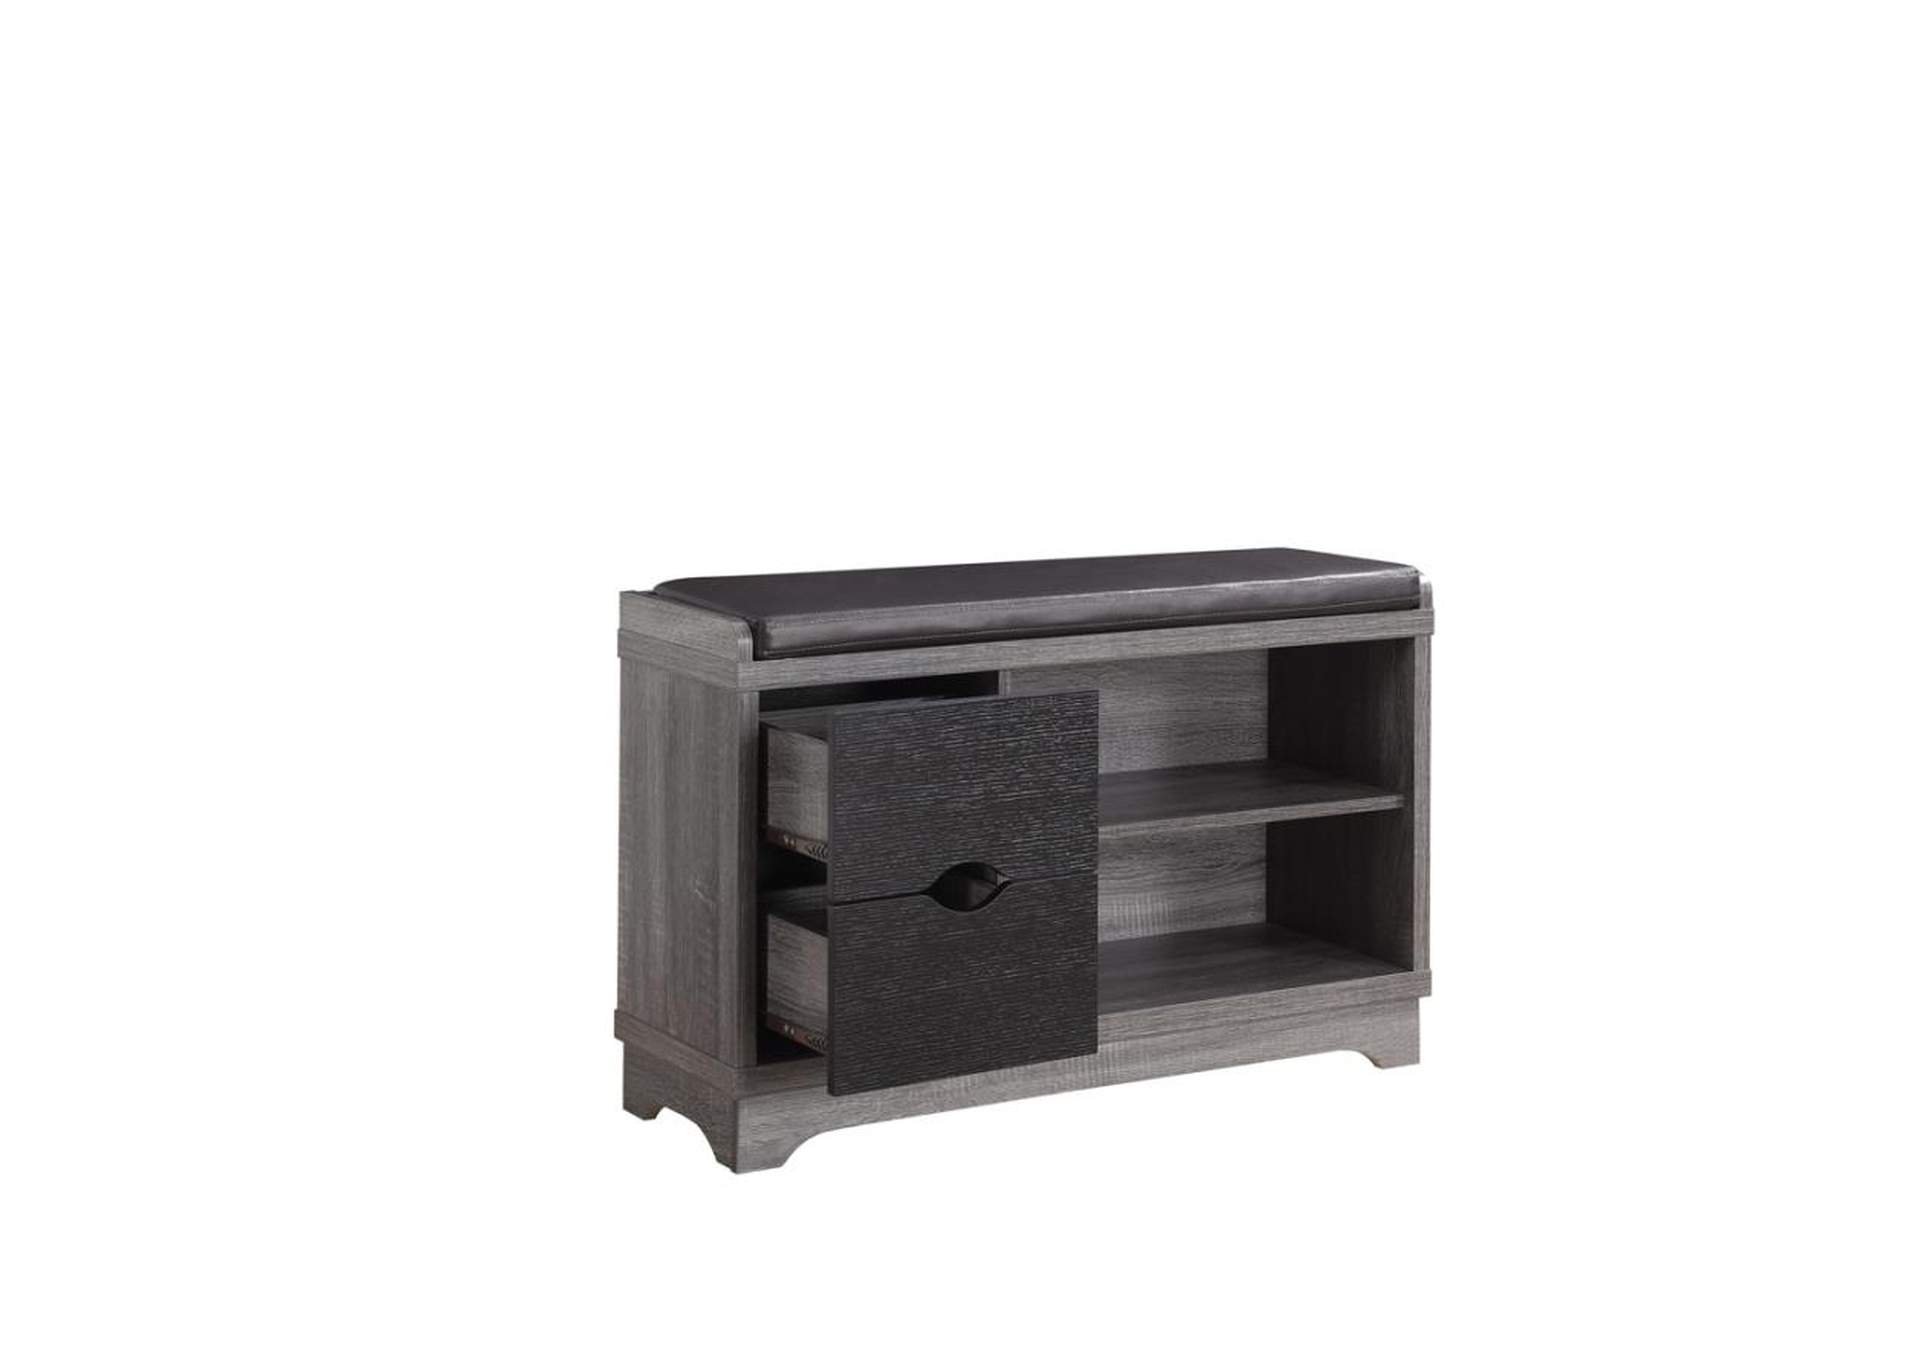 2-drawer Storage Bench Medium Brown and Black,Coaster Furniture